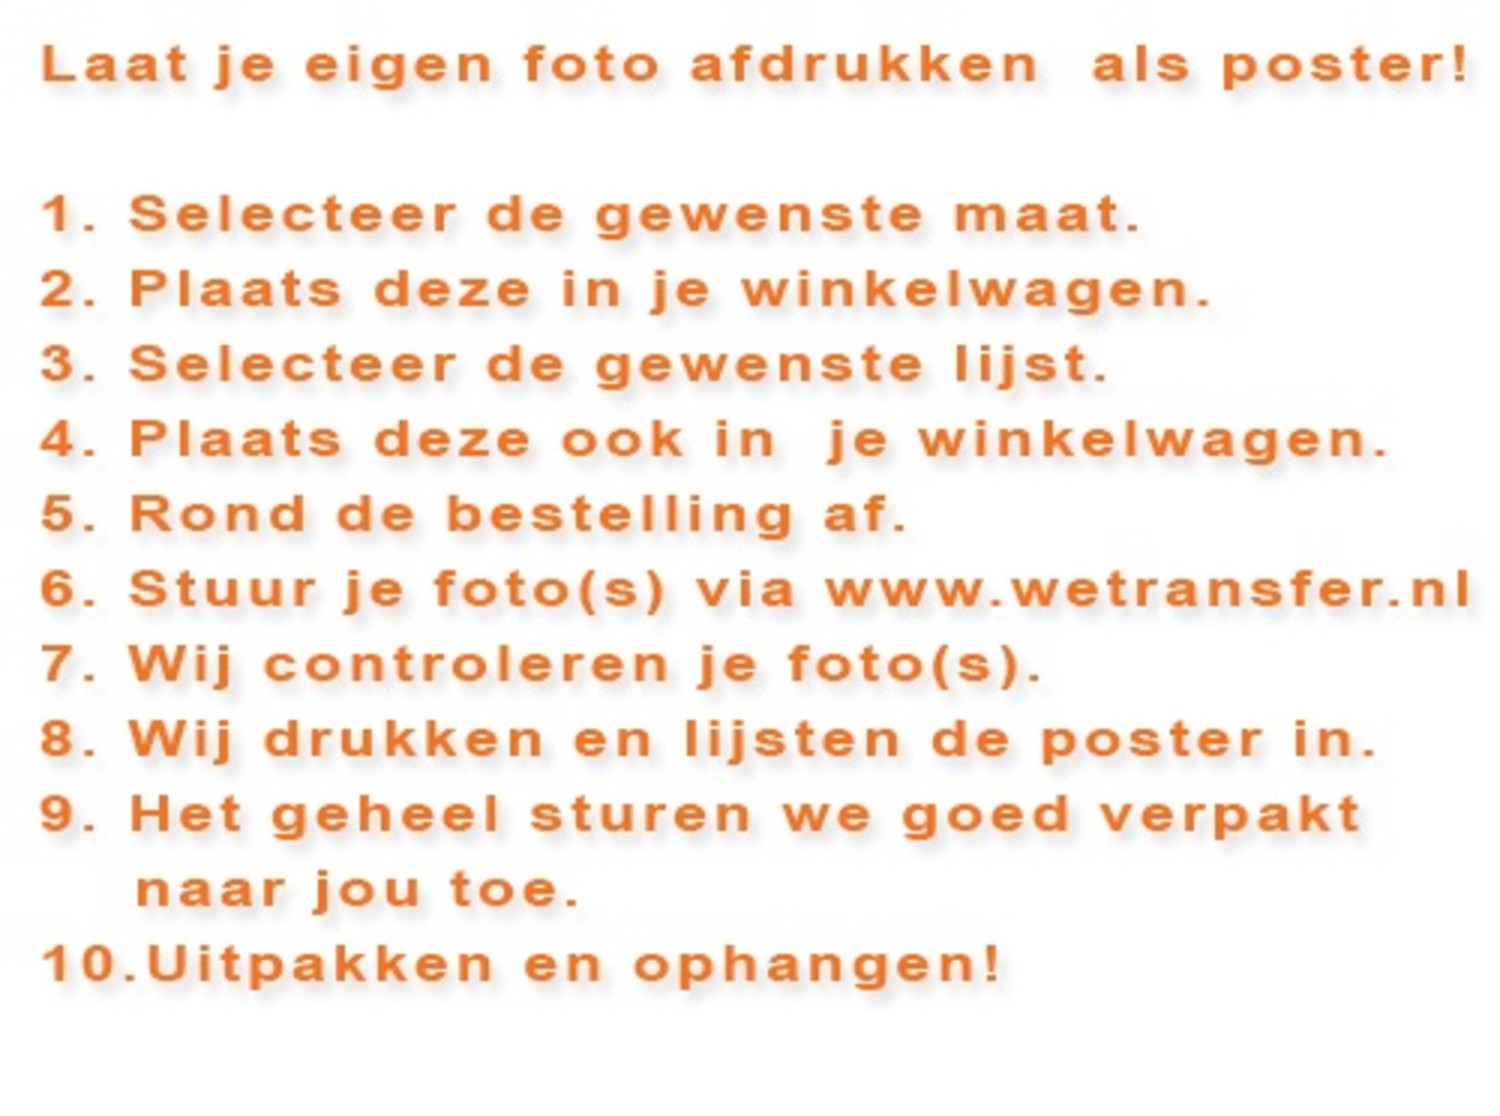 poster printen, plakken en inlijsten in lijst - Lijsten Fabriek - voordelig wissellijsten rechtstreeks vanaf de fabriek (NL)